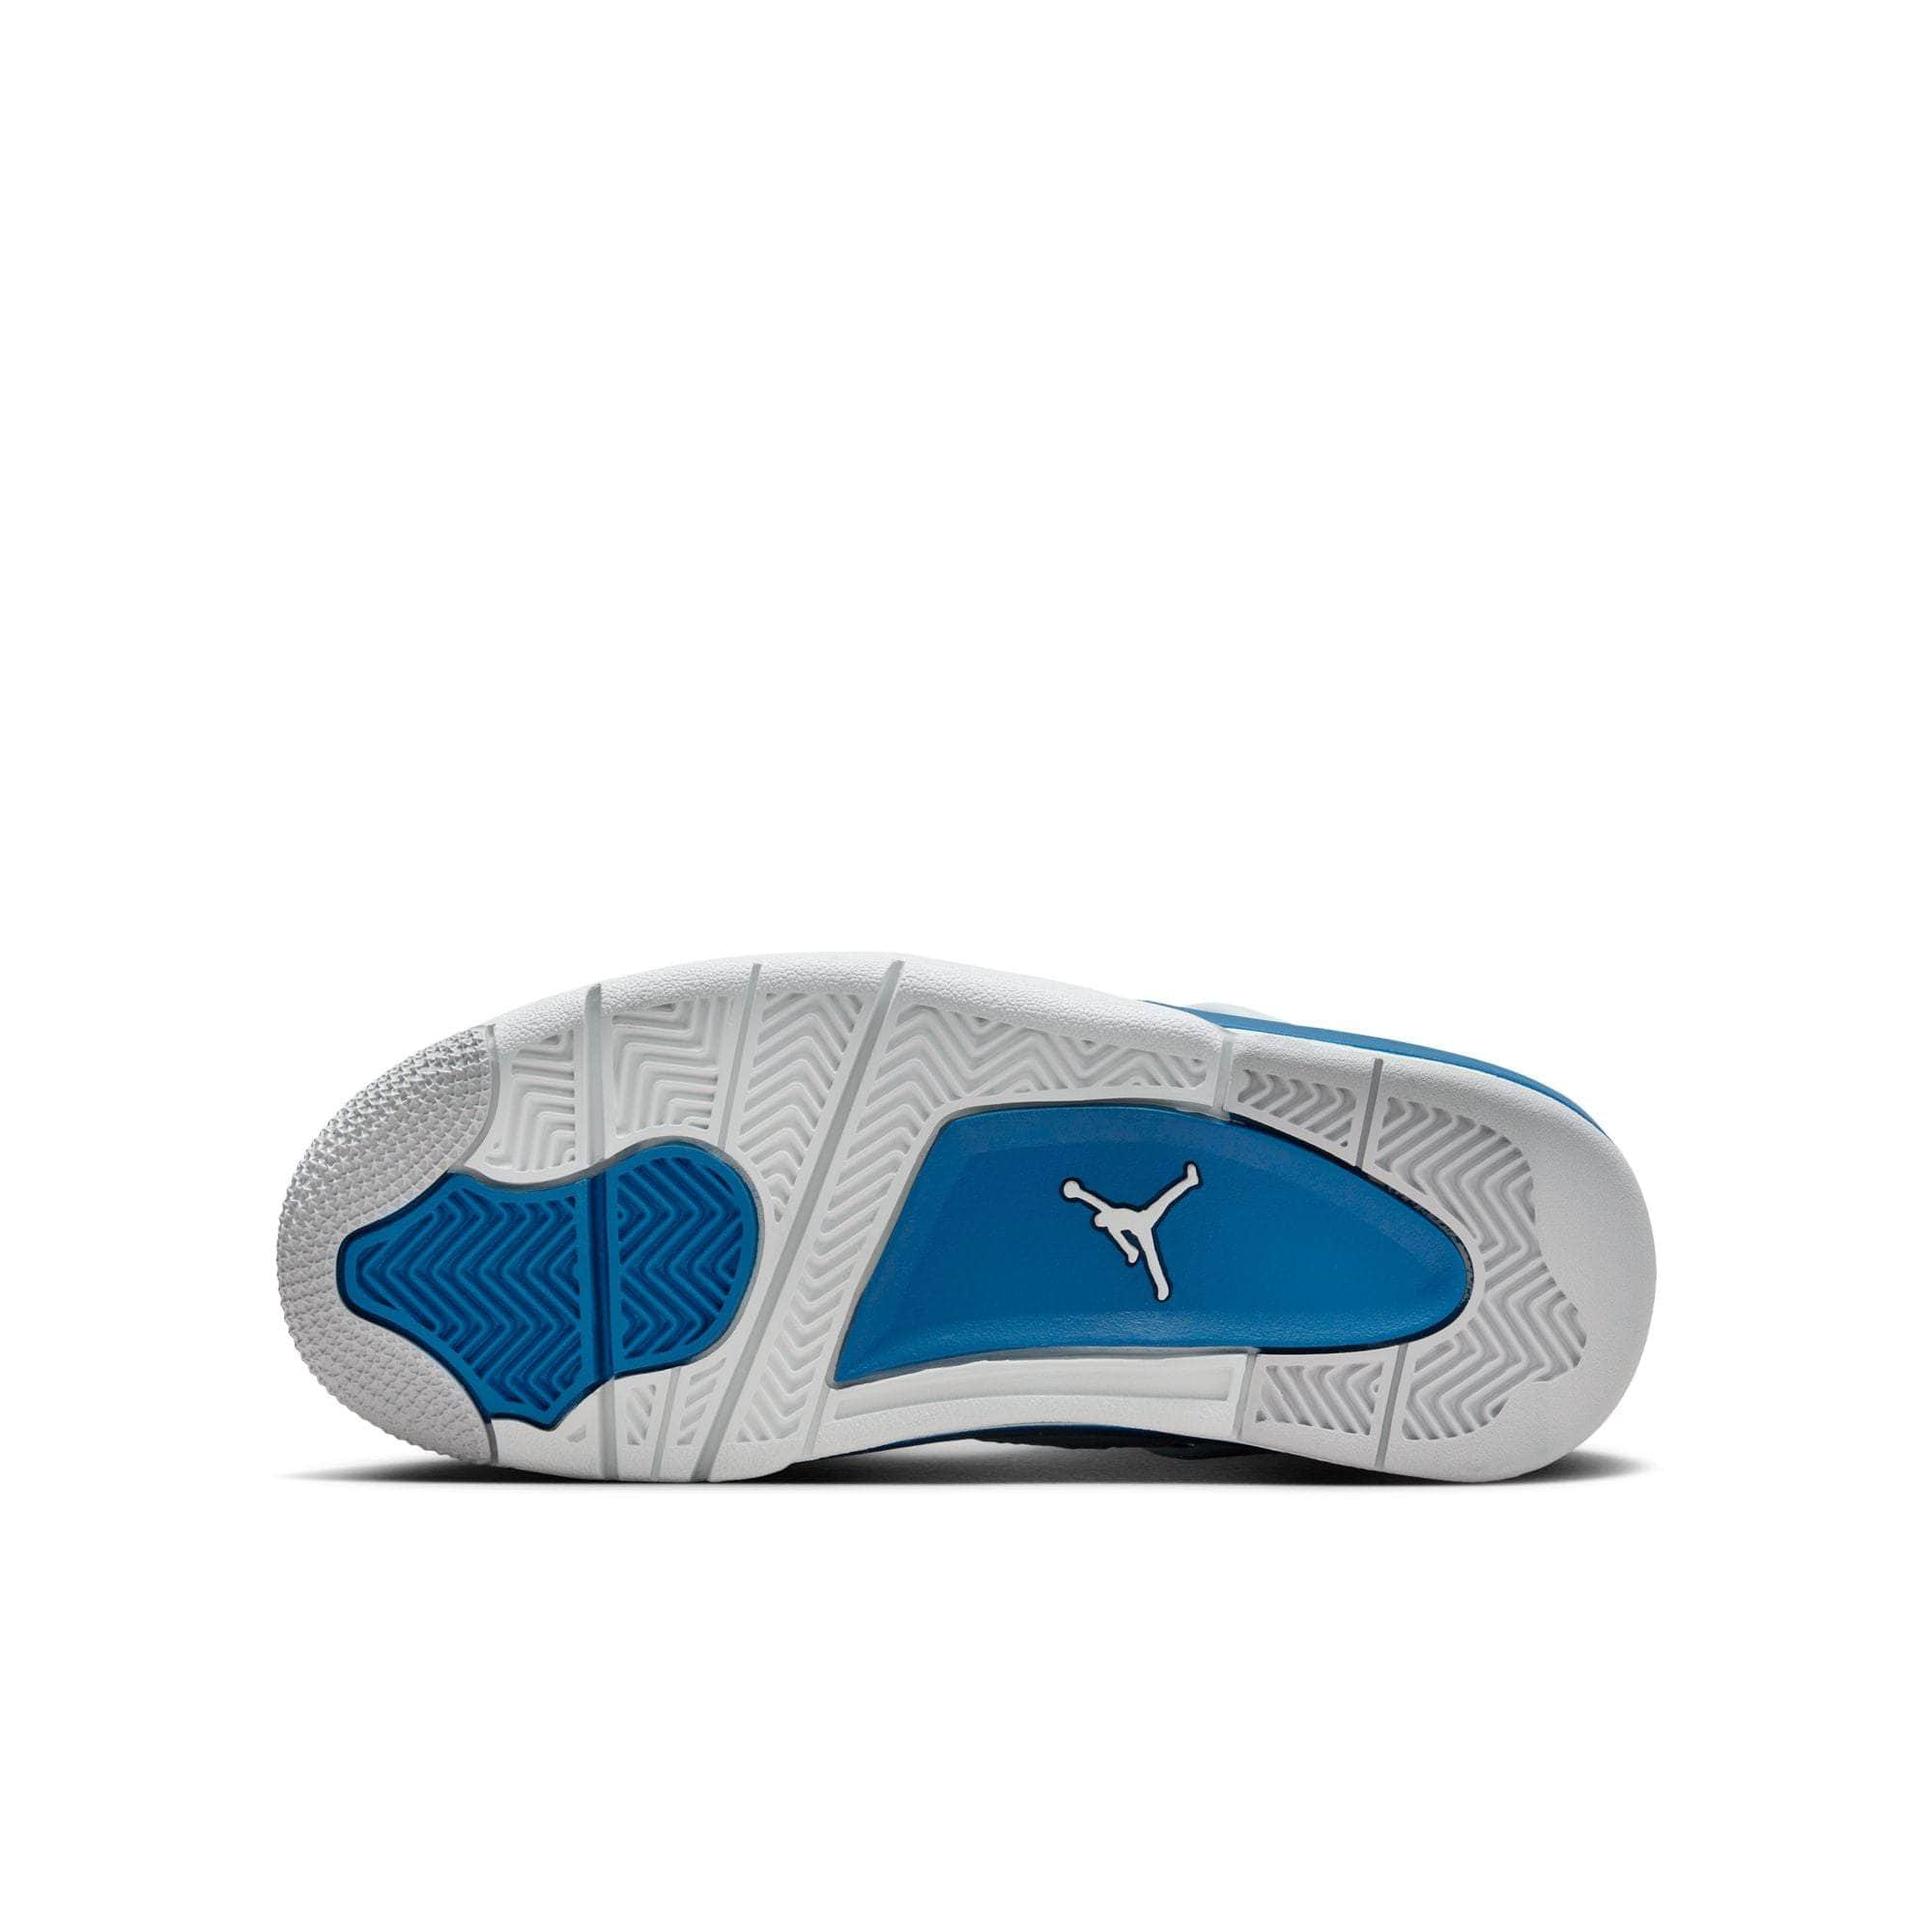 Air Jordan Footwear Air Jordan 4 Retro "Military Blue" - Boy's GS